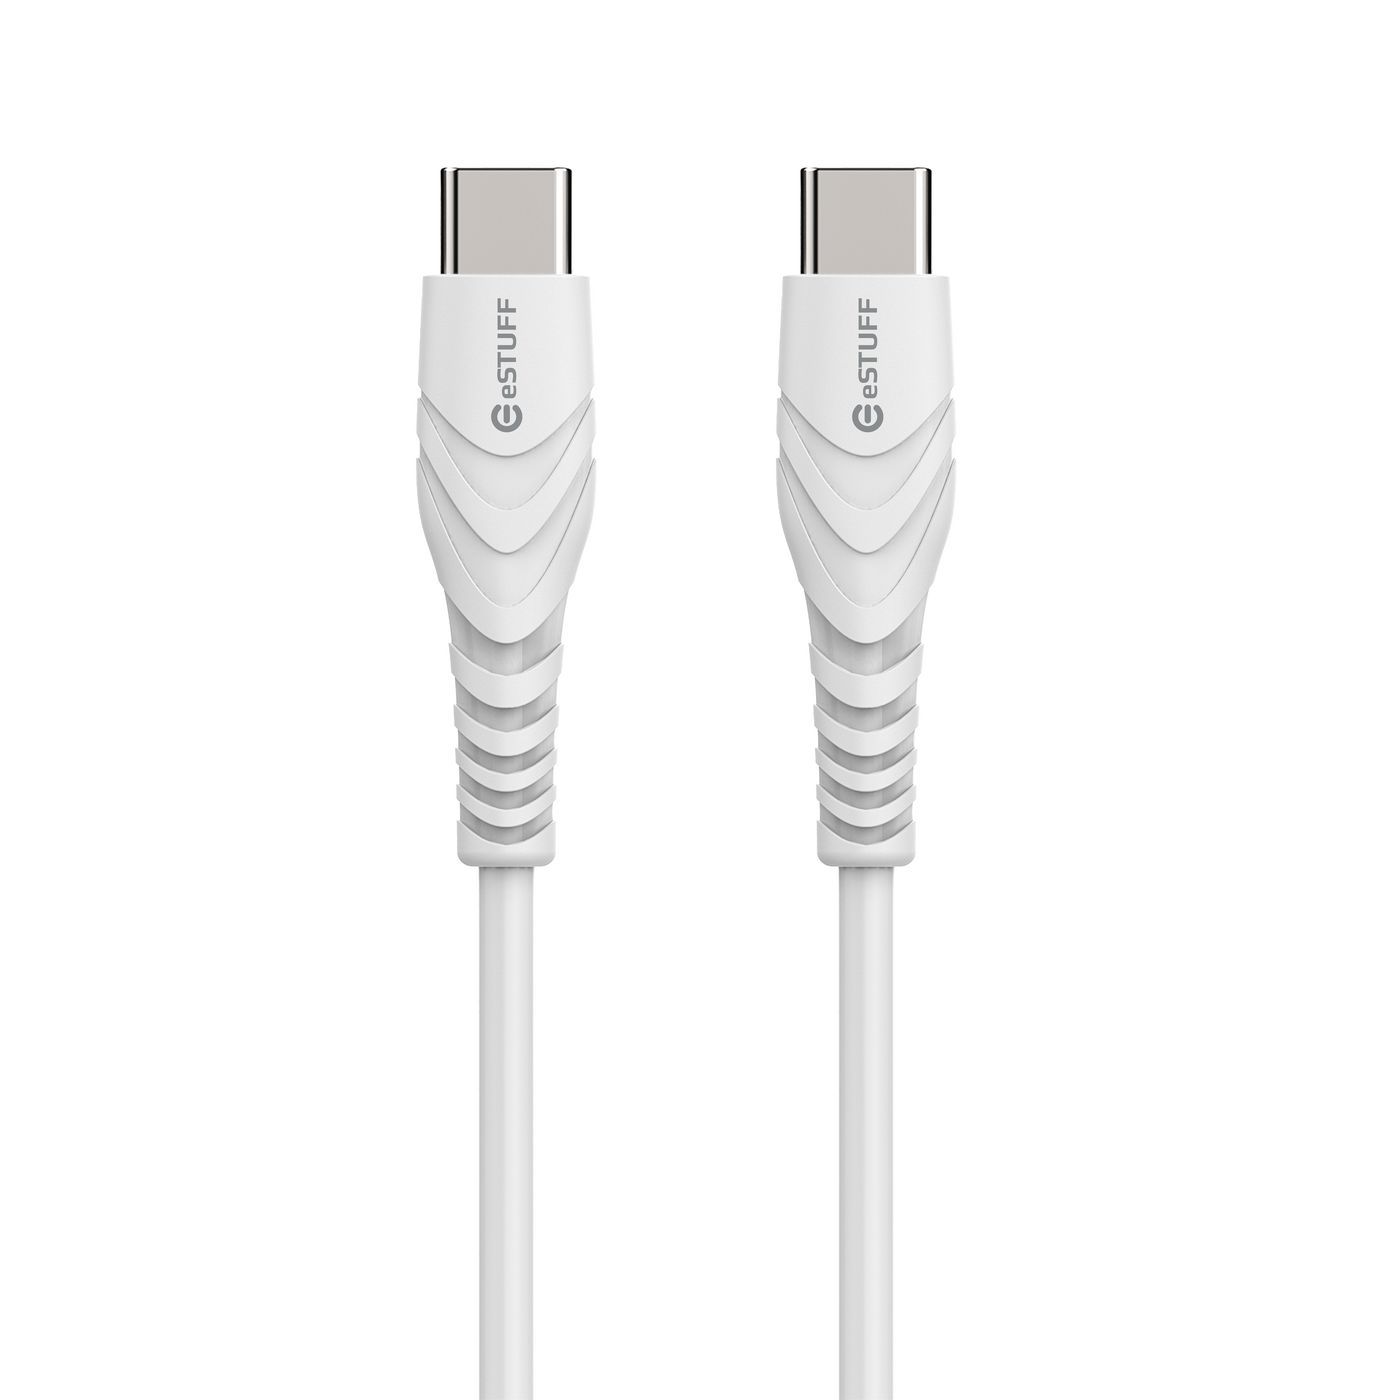 USB-c - C Cable - USB-c Male / USB-c Male - 2m White Bulk